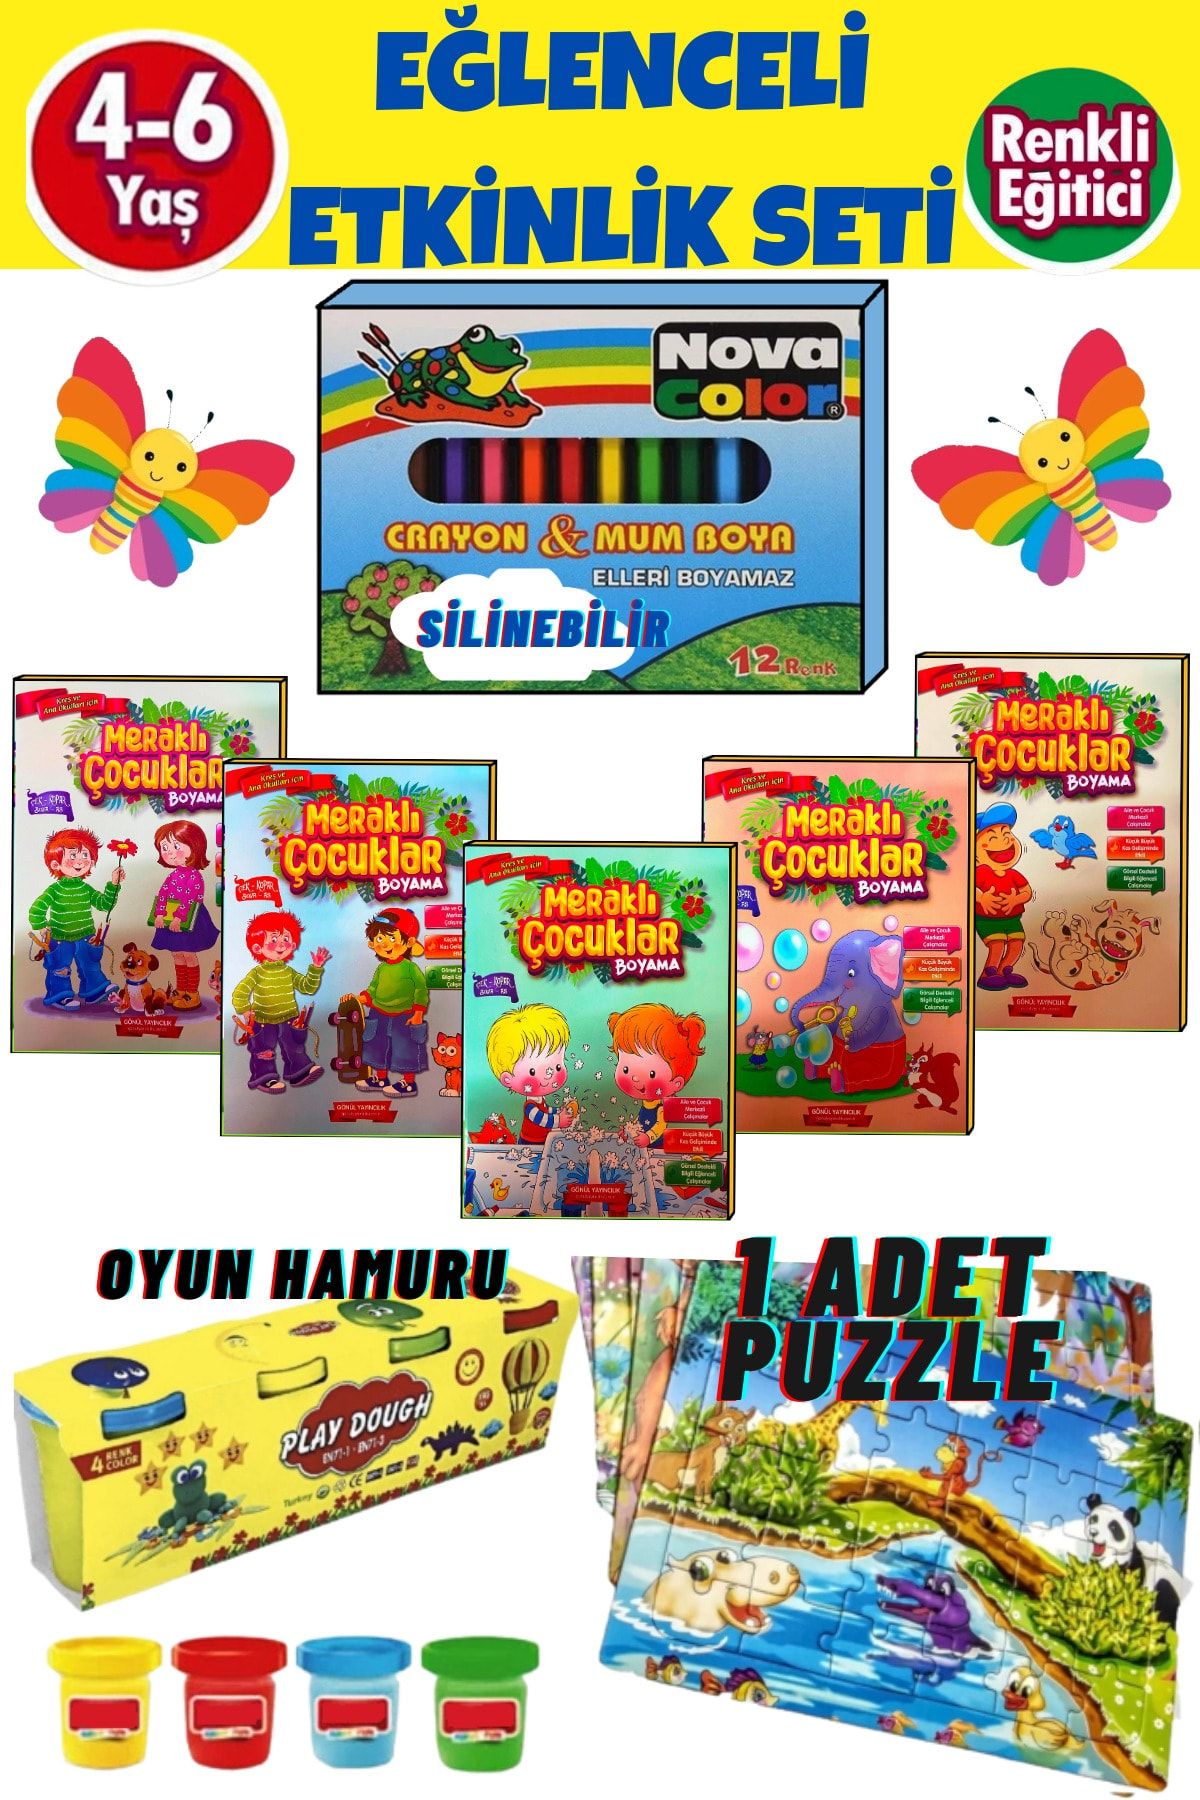 GÖNÜL YAYINCILIK 4-6 Yaş Çocuklar Için Eğlenceli Etkinlik Seti(mum Boya+5 Adet Boyama Kitabı.+puzzle+oyun Hamuru)